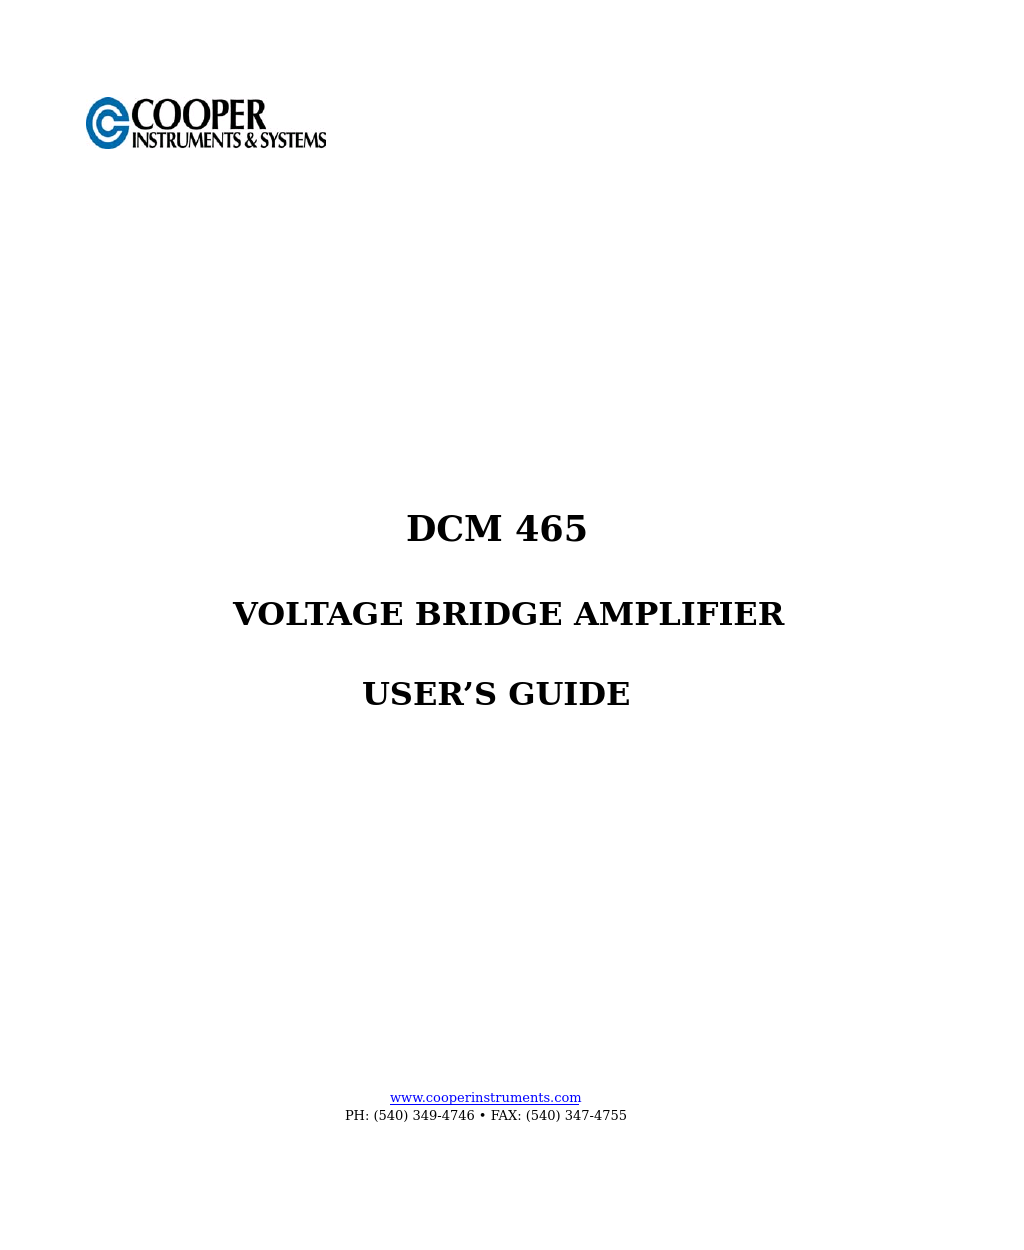 DCM 465 Voltage Bridge Amplifier